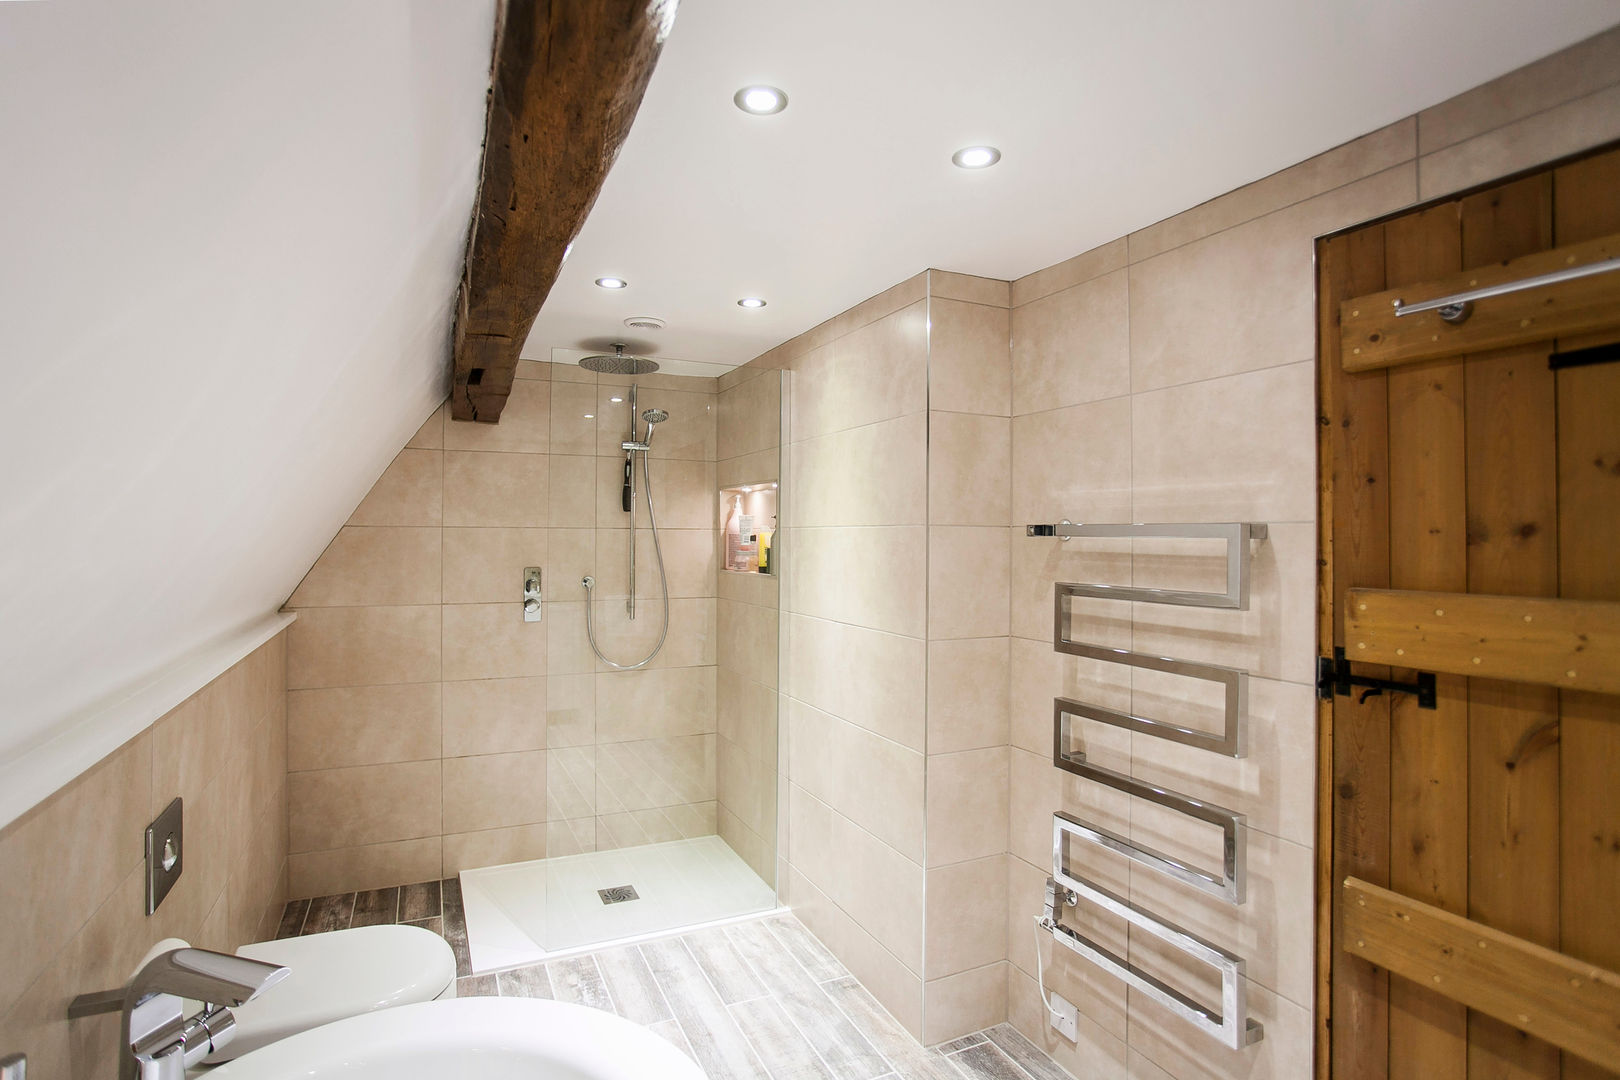 Blissful Bathroom Design from Burlanes Interiors, Burlanes Interiors Burlanes Interiors Baños de estilo moderno Bañeras y duchas